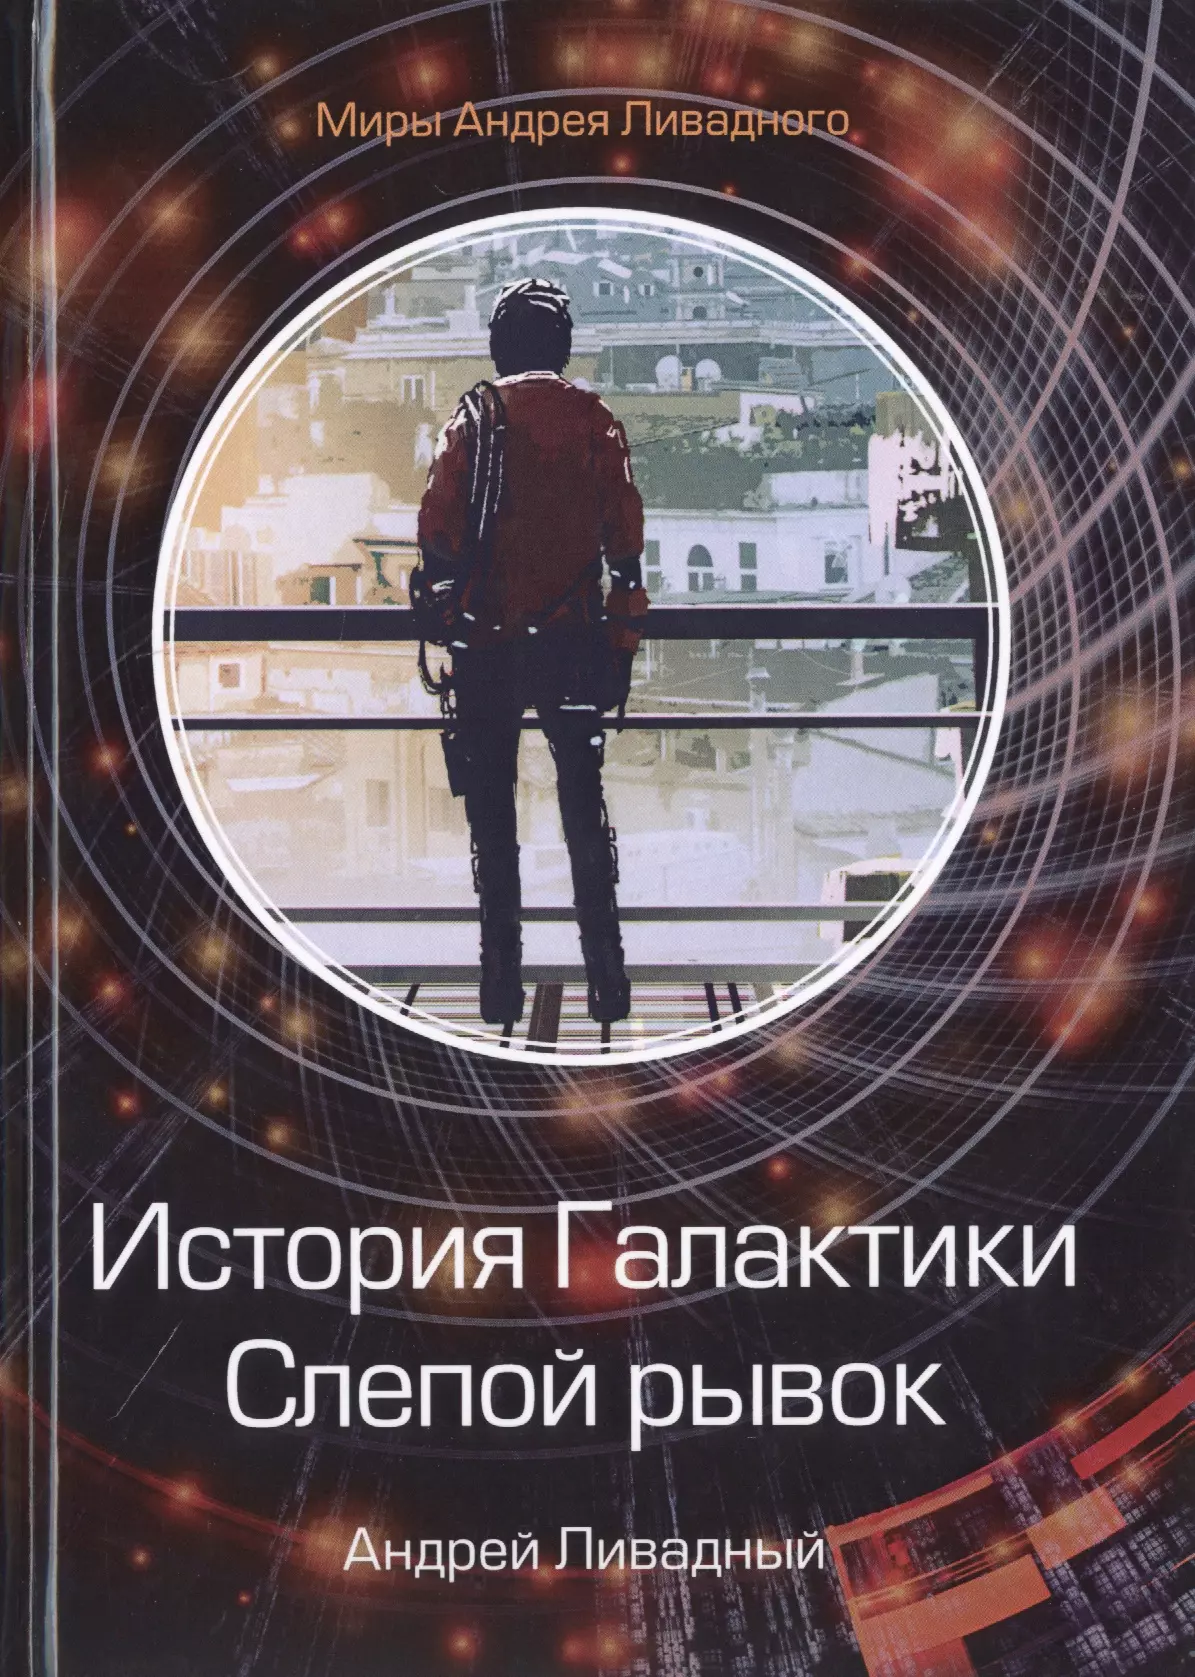 Ливадный Андрей Львович - История Галактики. Слепой рывок